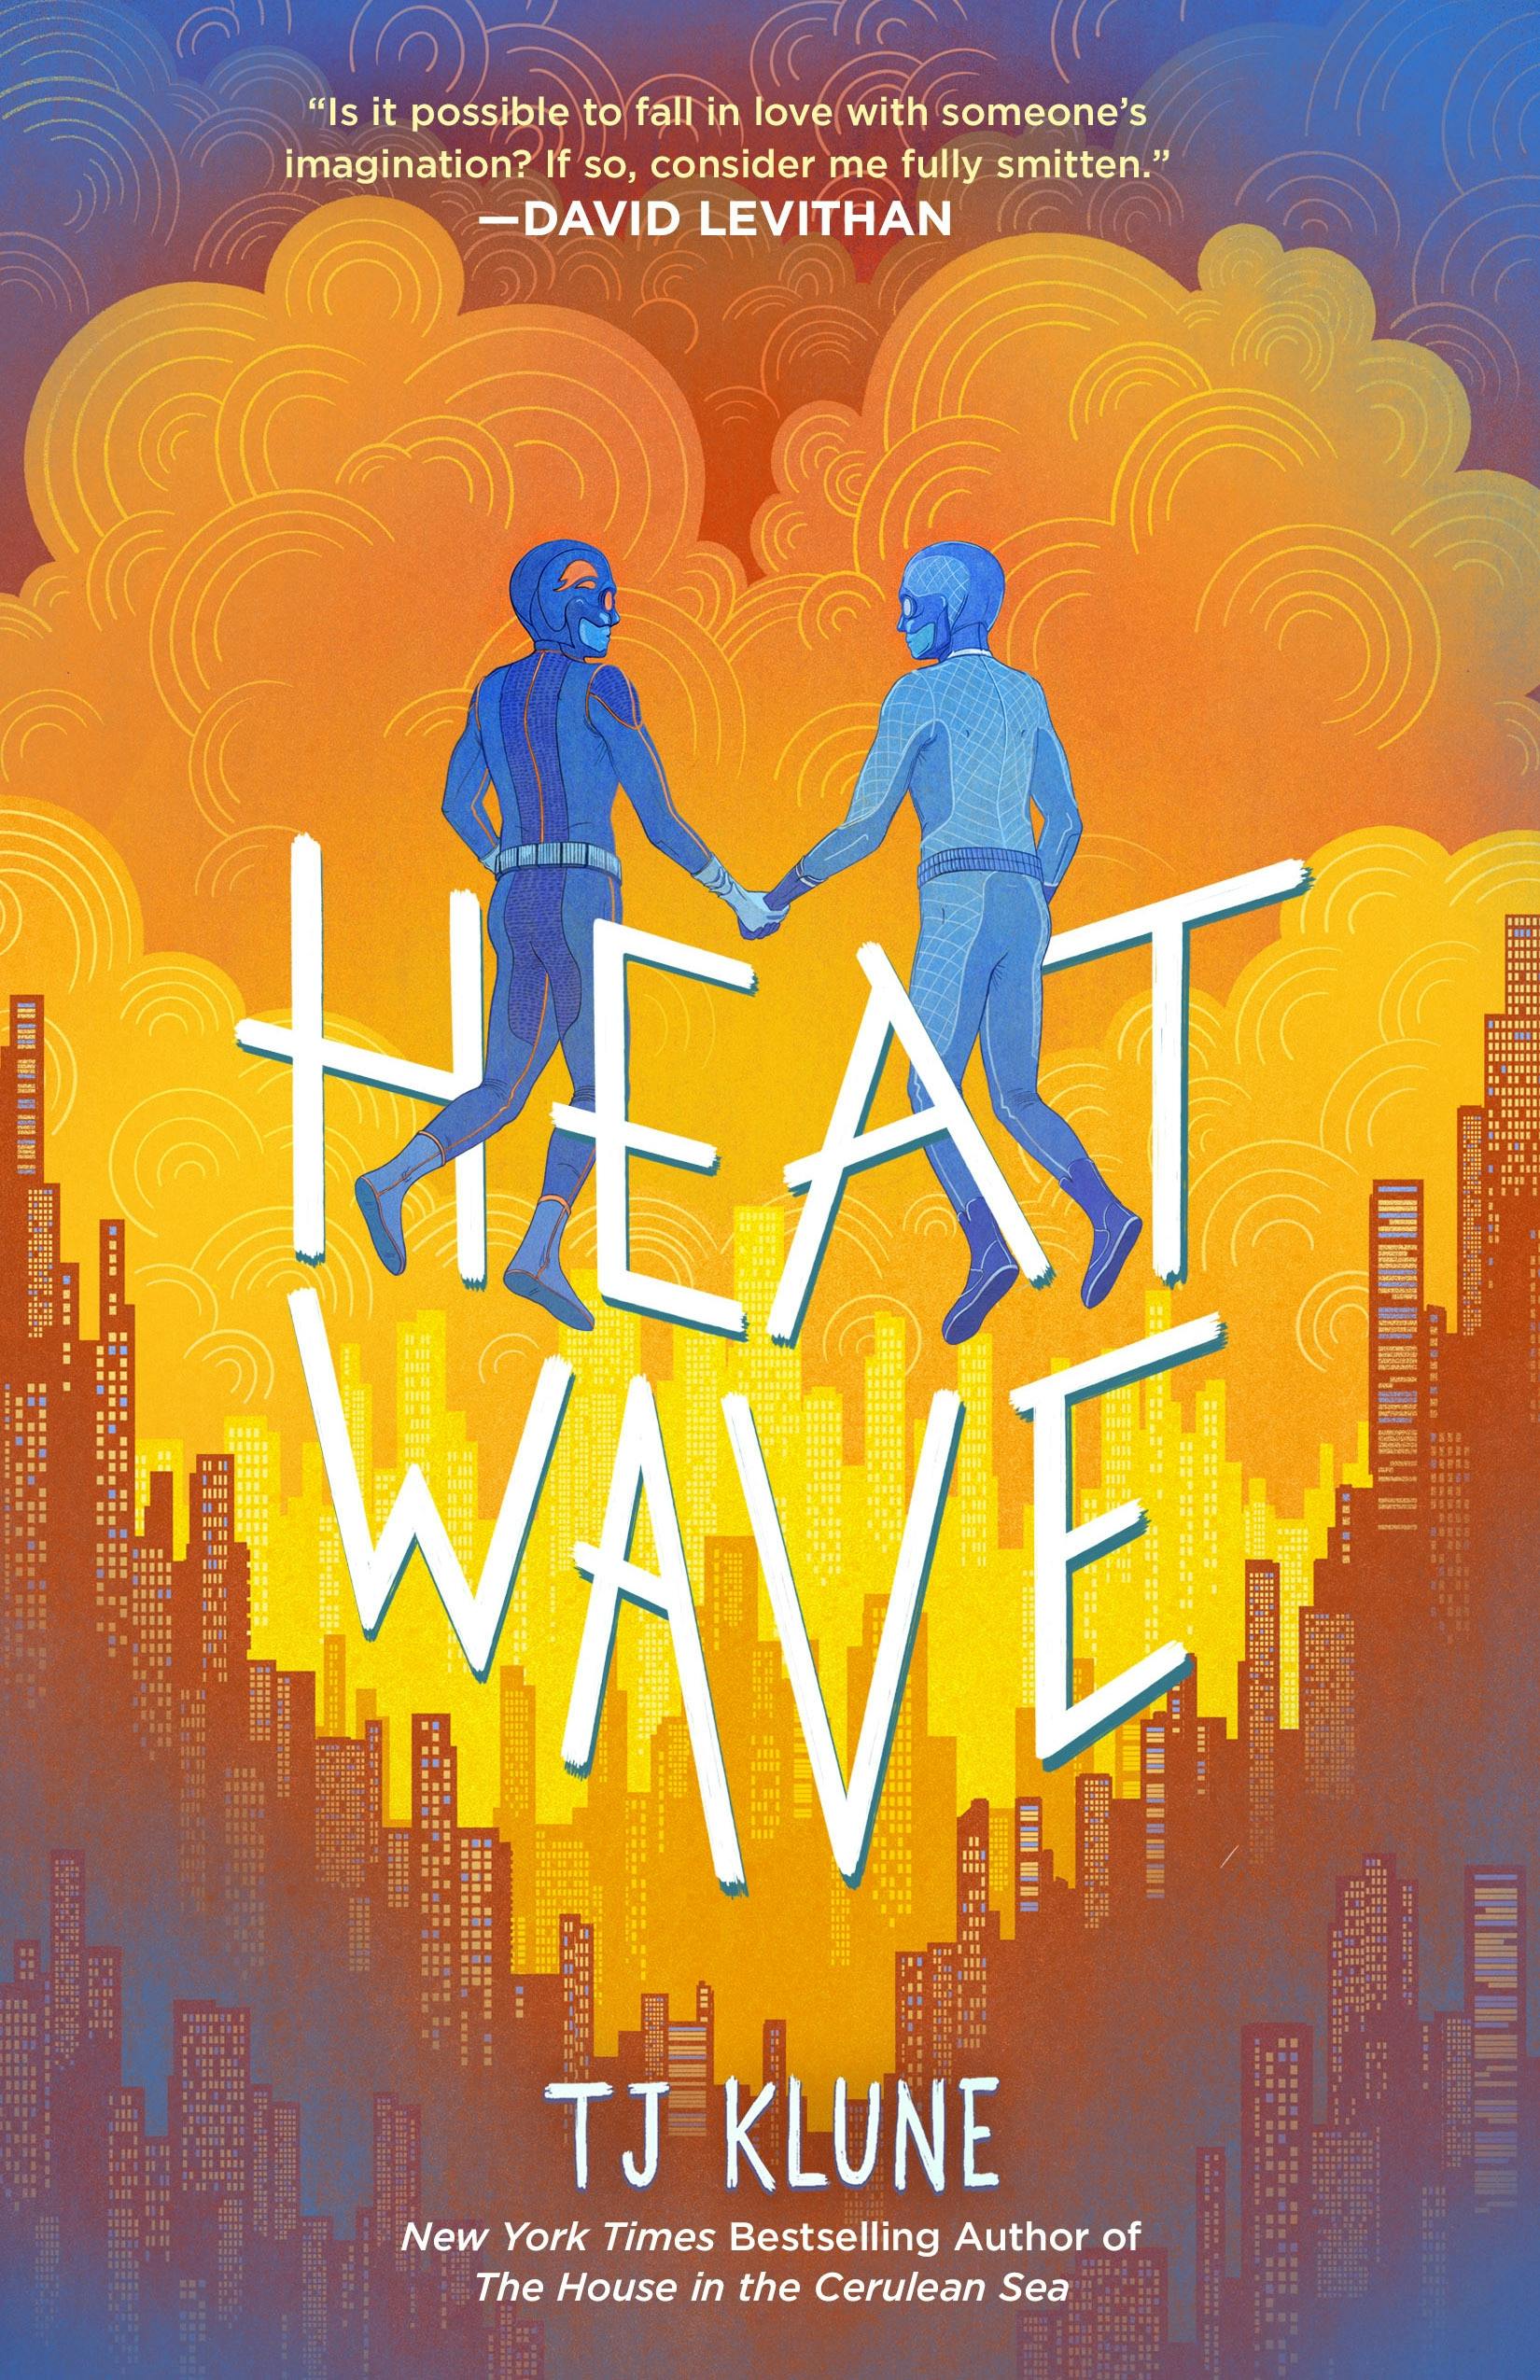 Heat Wave by T.J. Klune